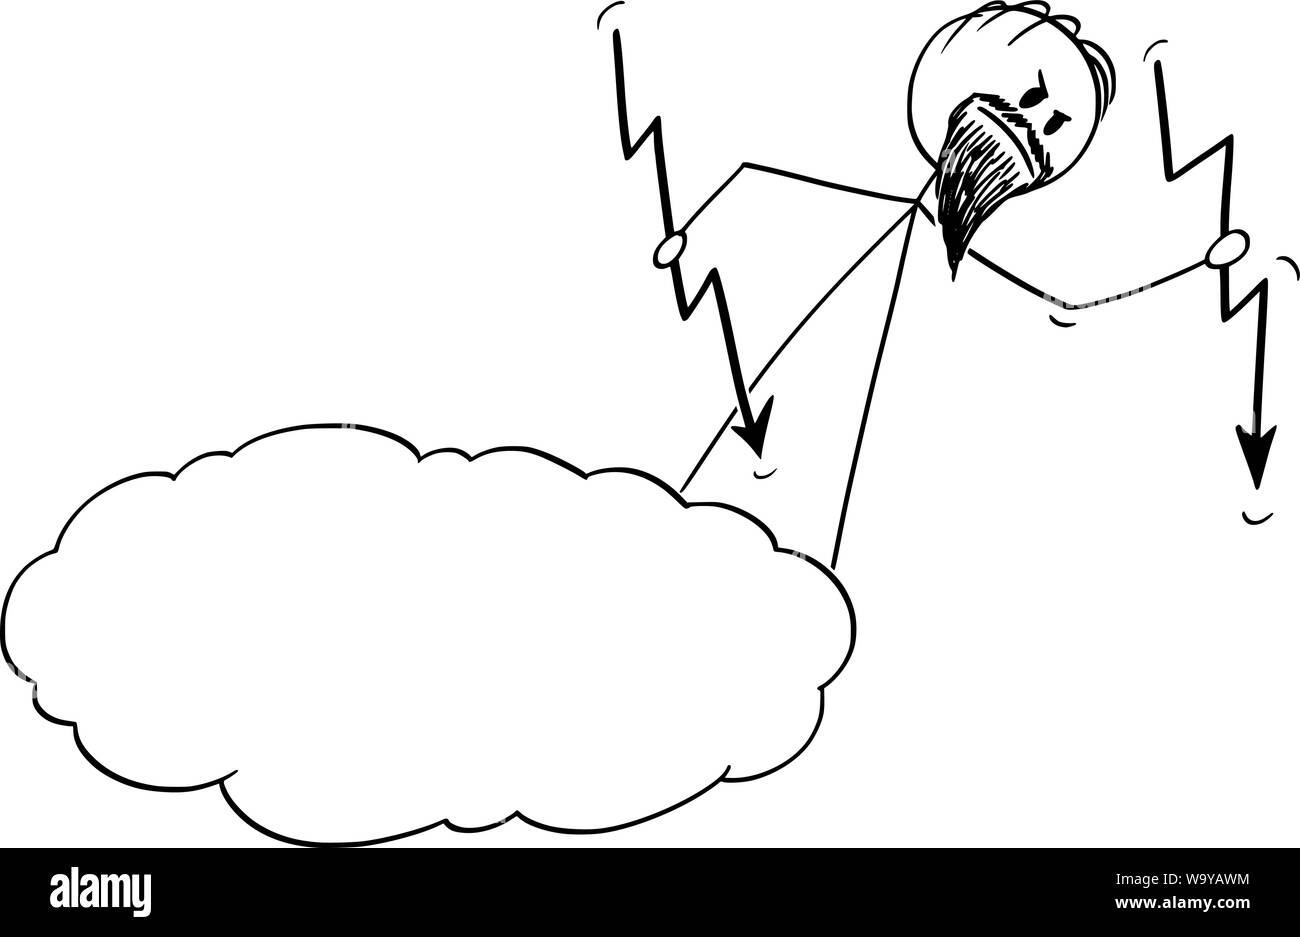 Vector cartoon stick figure dessin illustration conceptuelle de dieu en colère casting ou jeter des éclairs du ciel ou les nuages. Illustration de Vecteur